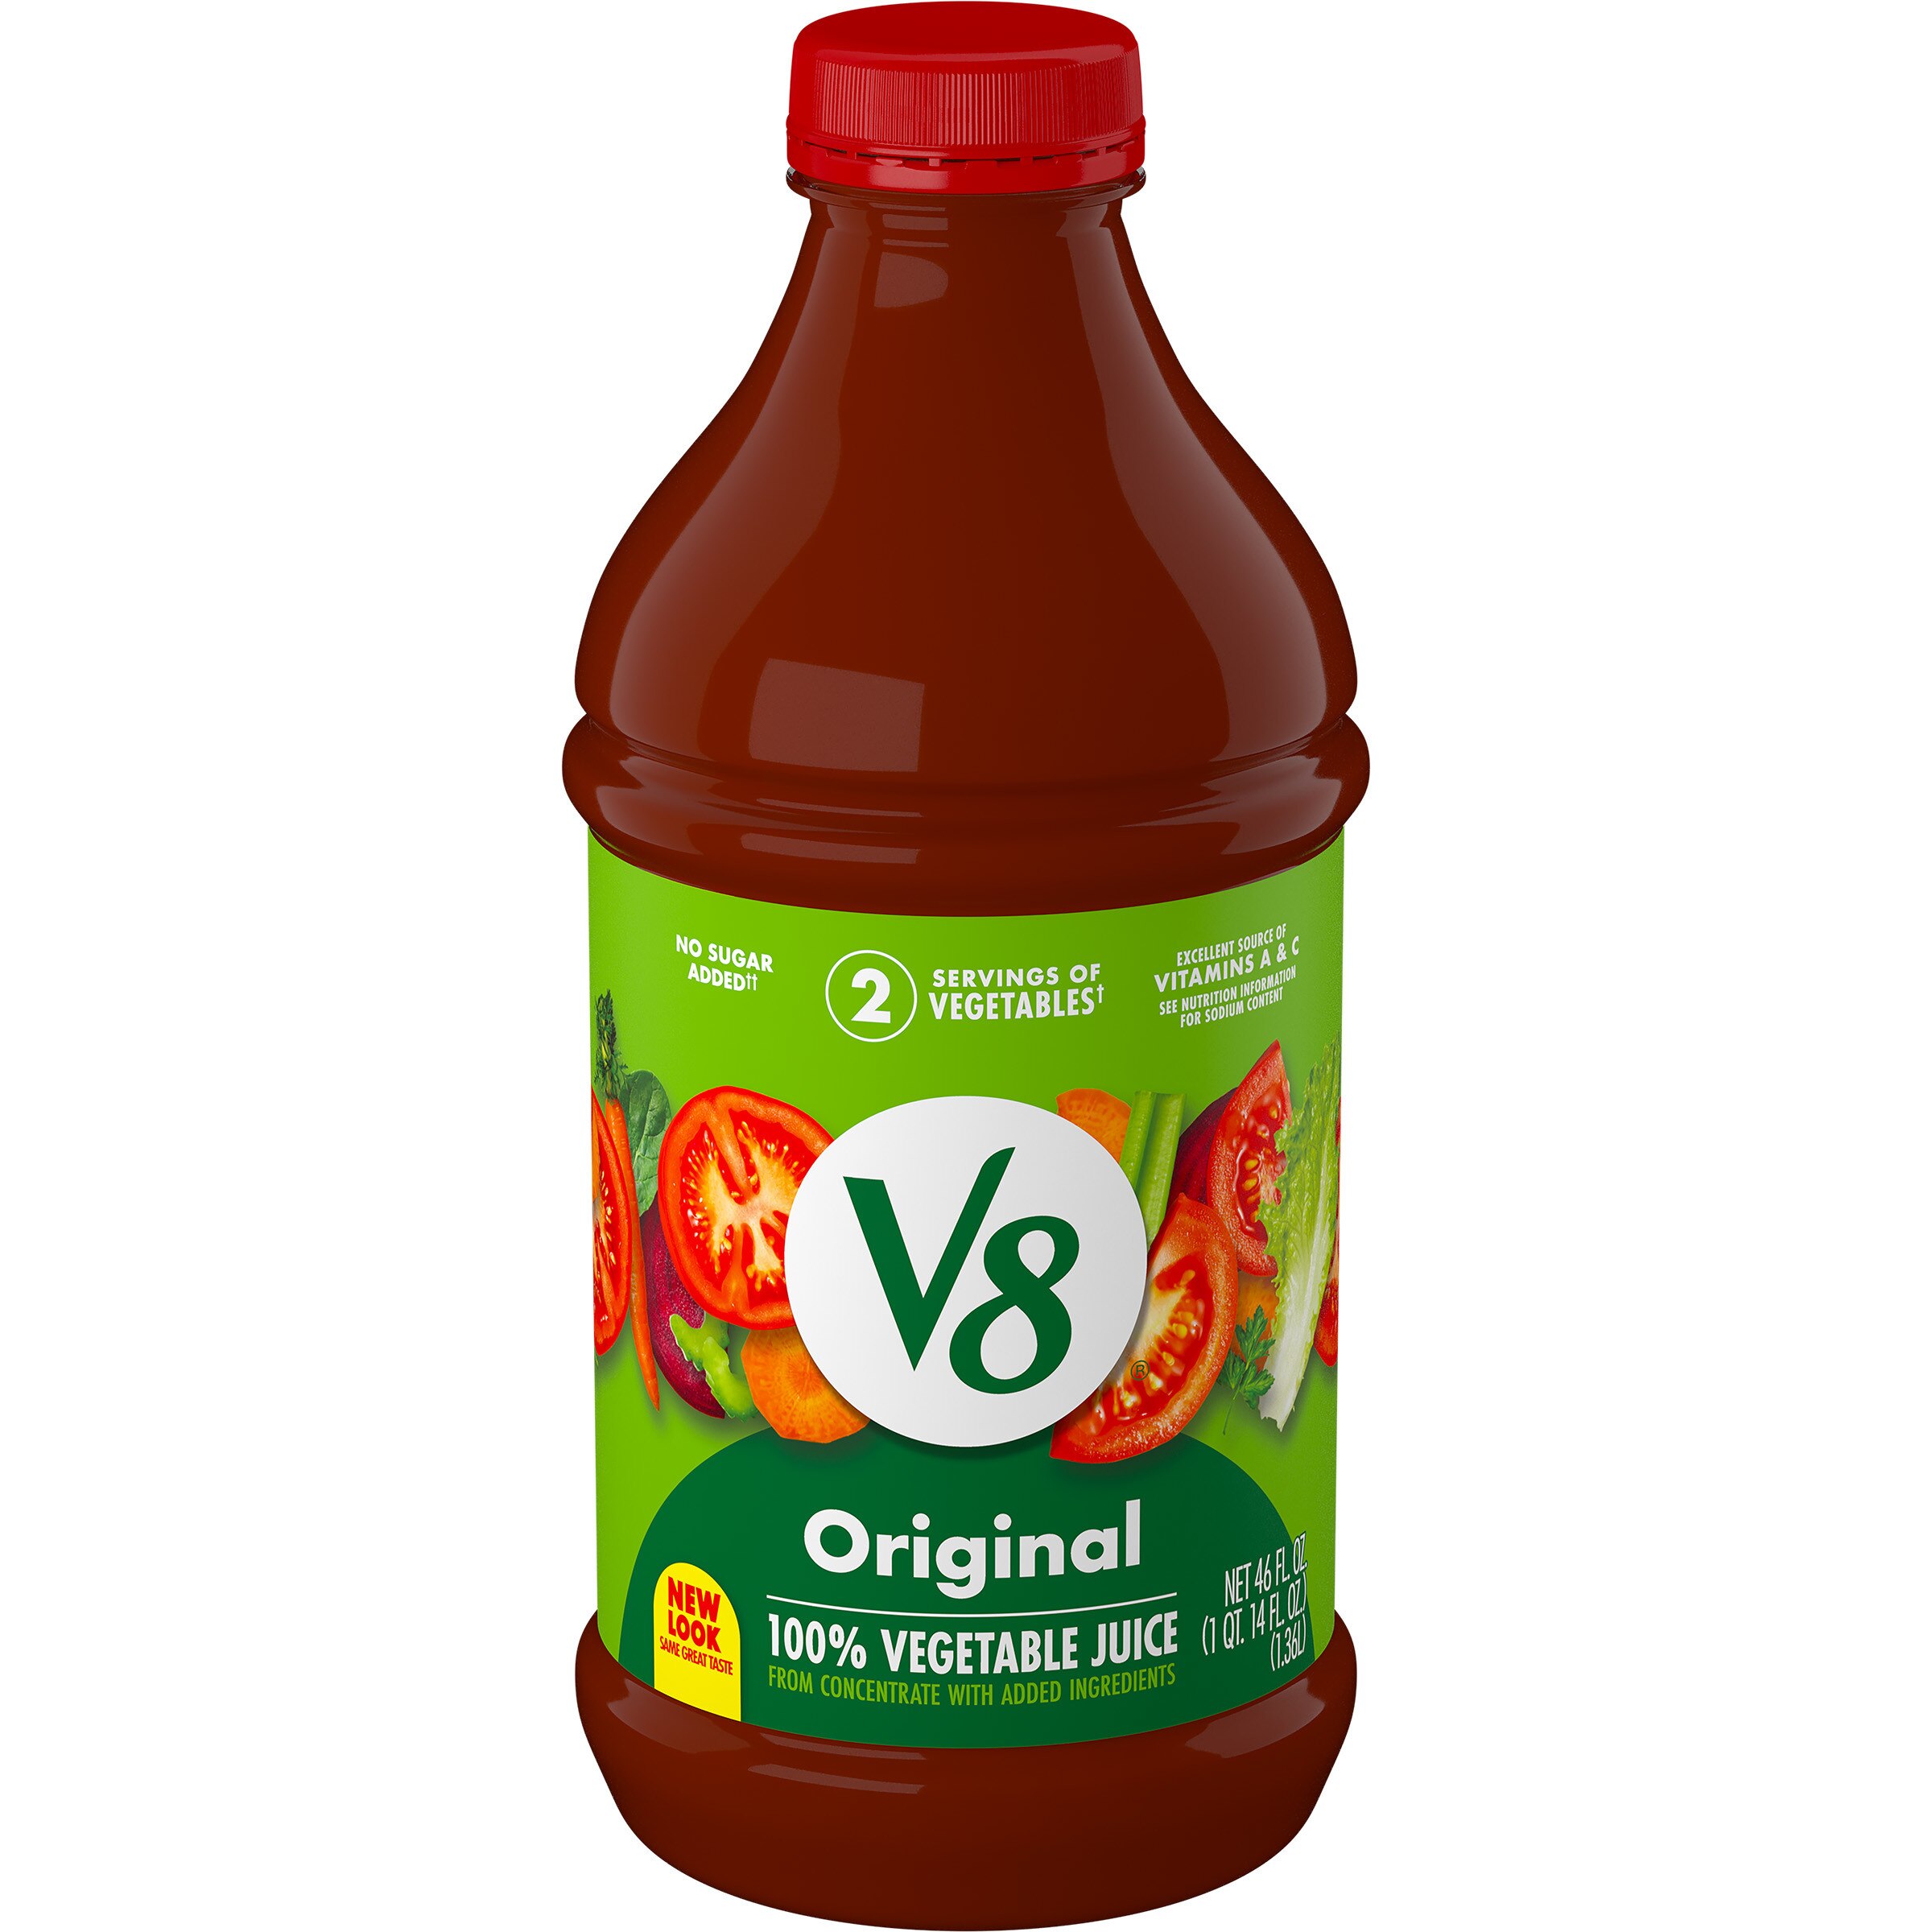 V8 Original 100% Vegetable Juice, 46 FL OZ Bottle